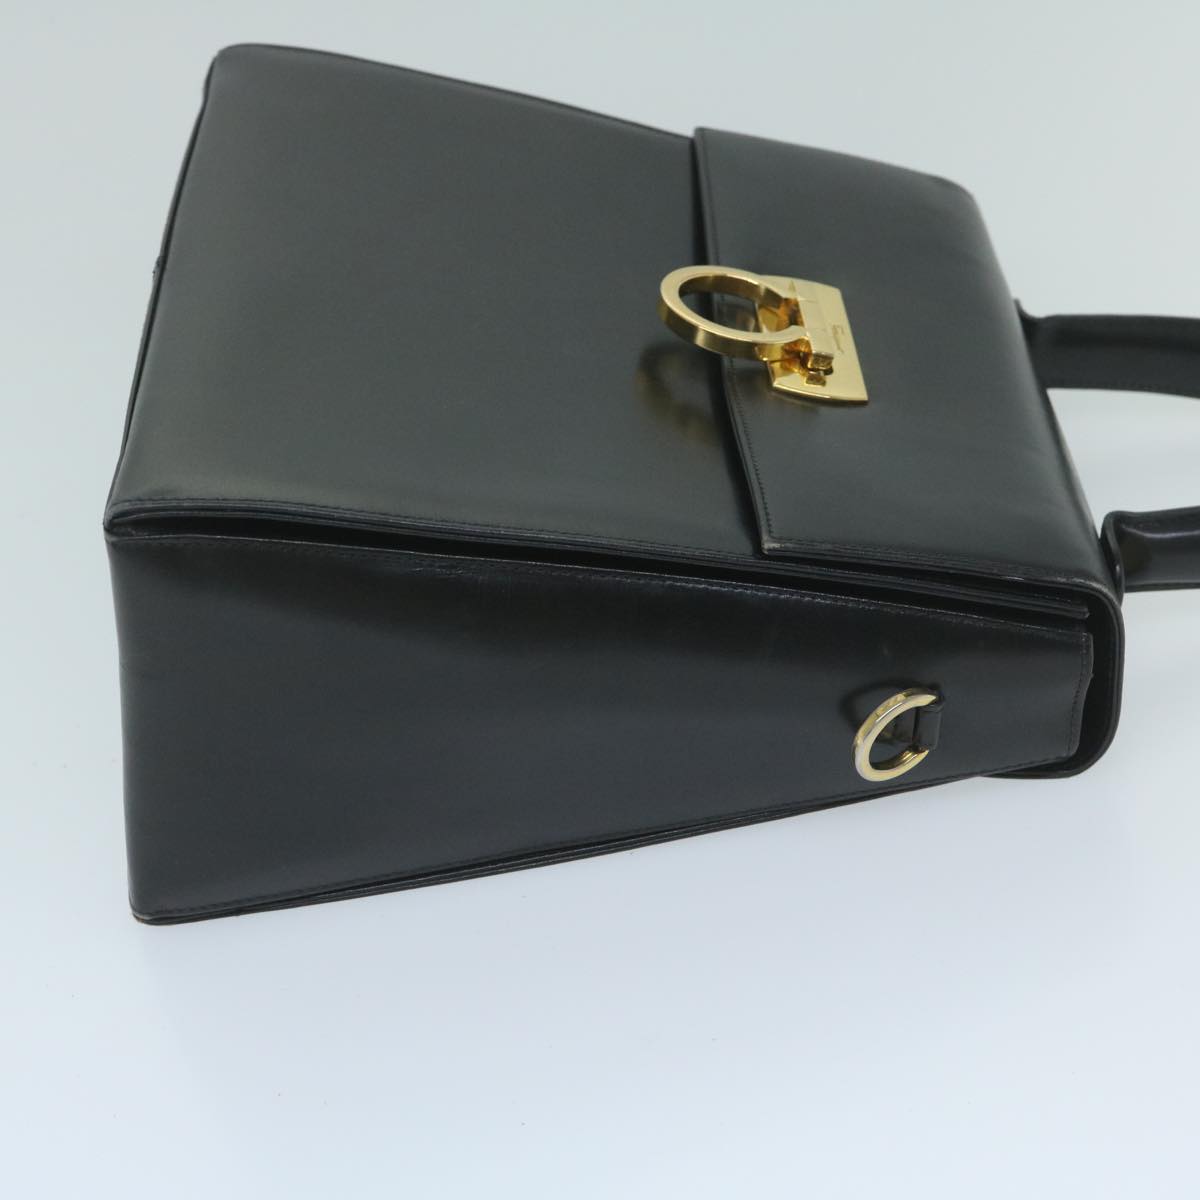 Salvatore Ferragamo Gancini Hand Bag Leather Black Auth 60124